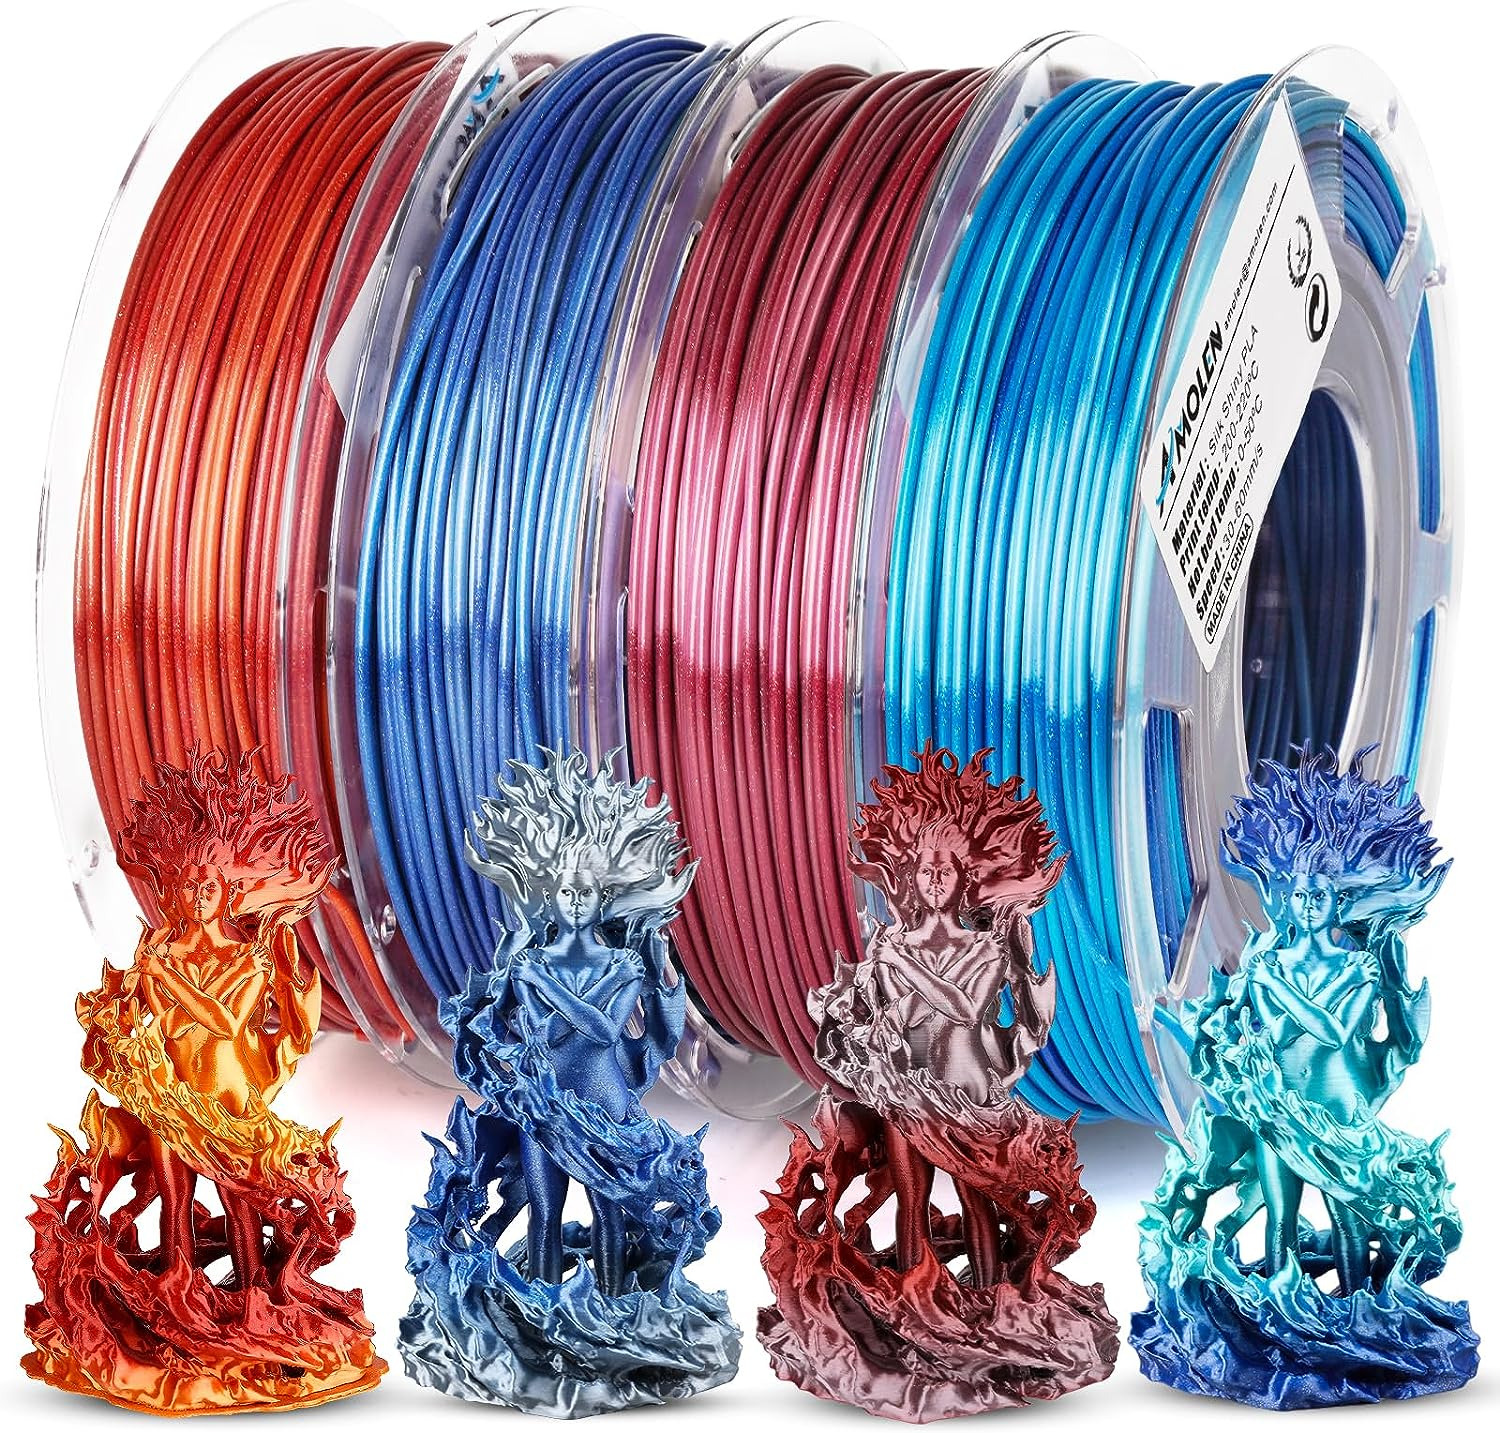 PLA 3D Printer Filament,Pla Filament 1.75Mm,Silk Shiny Filament Bundle, Red Gold